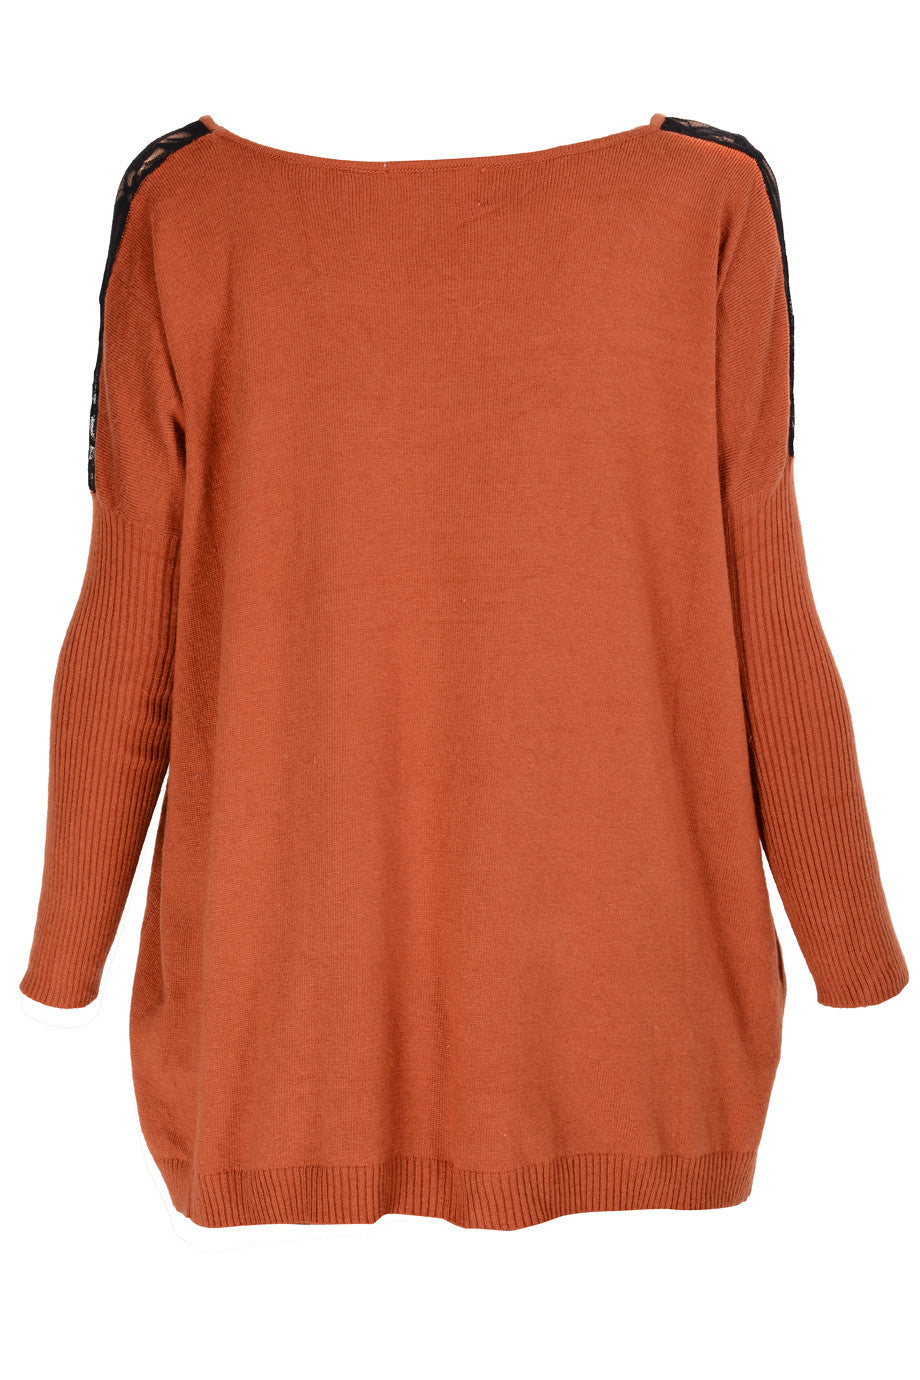 Πορτοκαλί Μπλούζα με Σχέδια | Γυναικεία Ρούχα